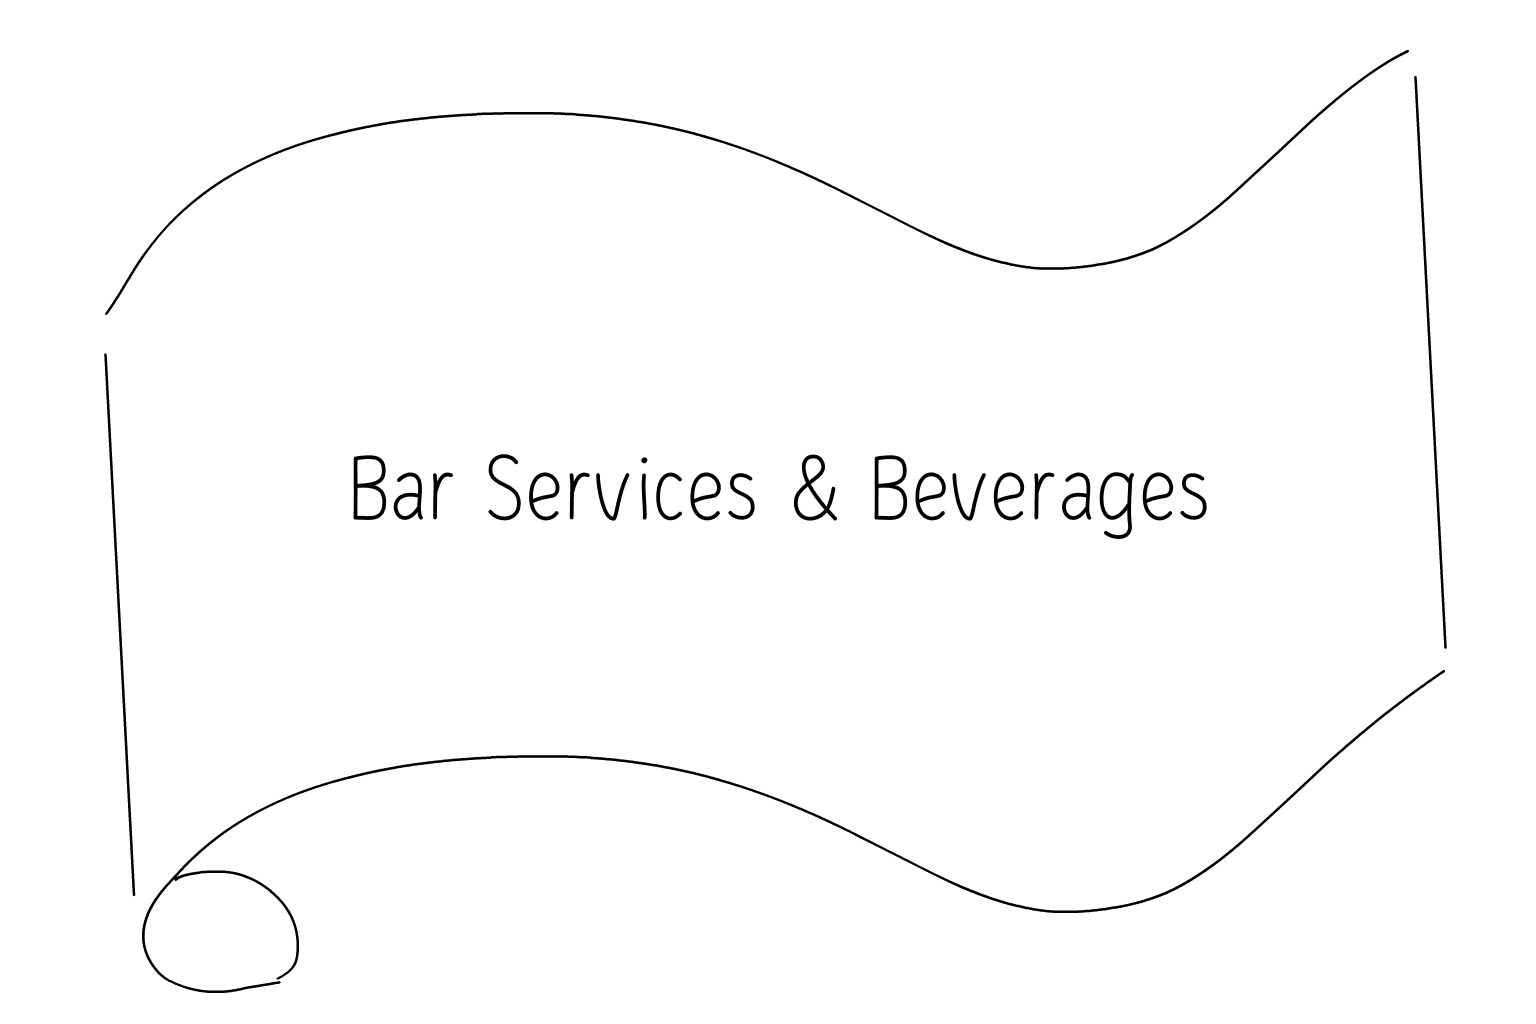 Ilustración de servicios de bar y bebidas para bodas